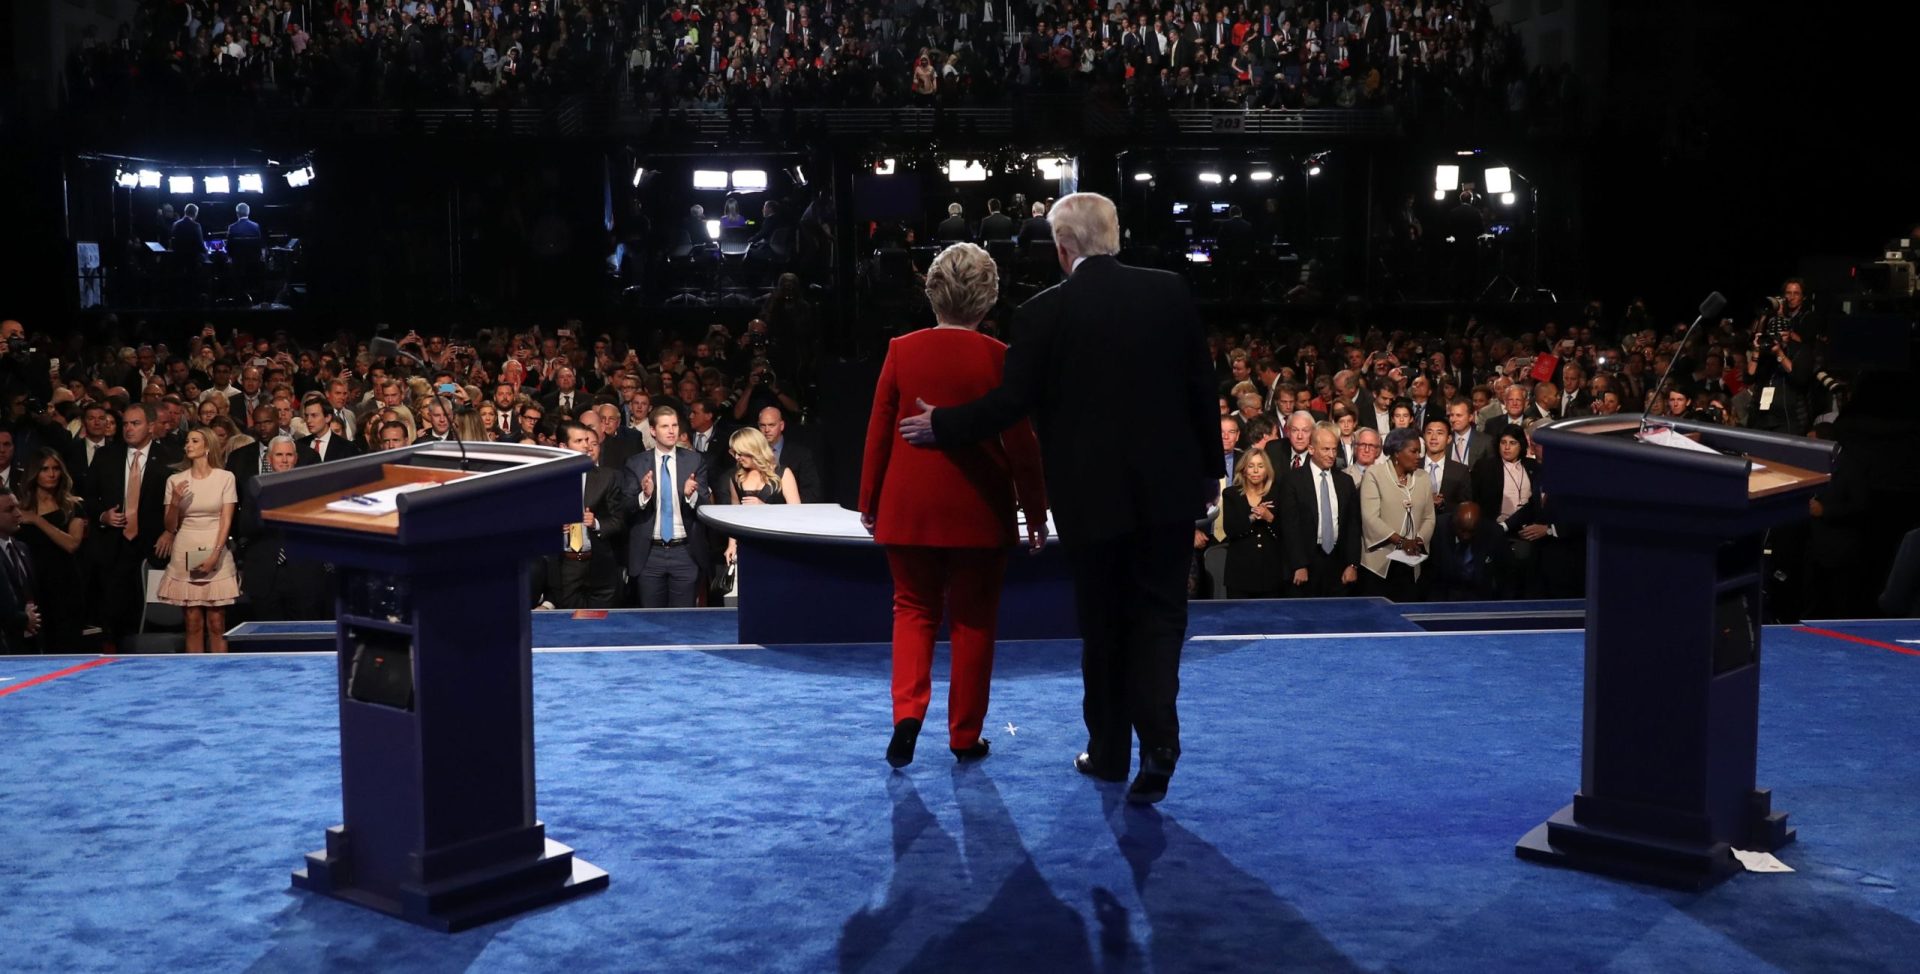 EUA. Imprensa dá vantagem a Hillary no debate com Trump